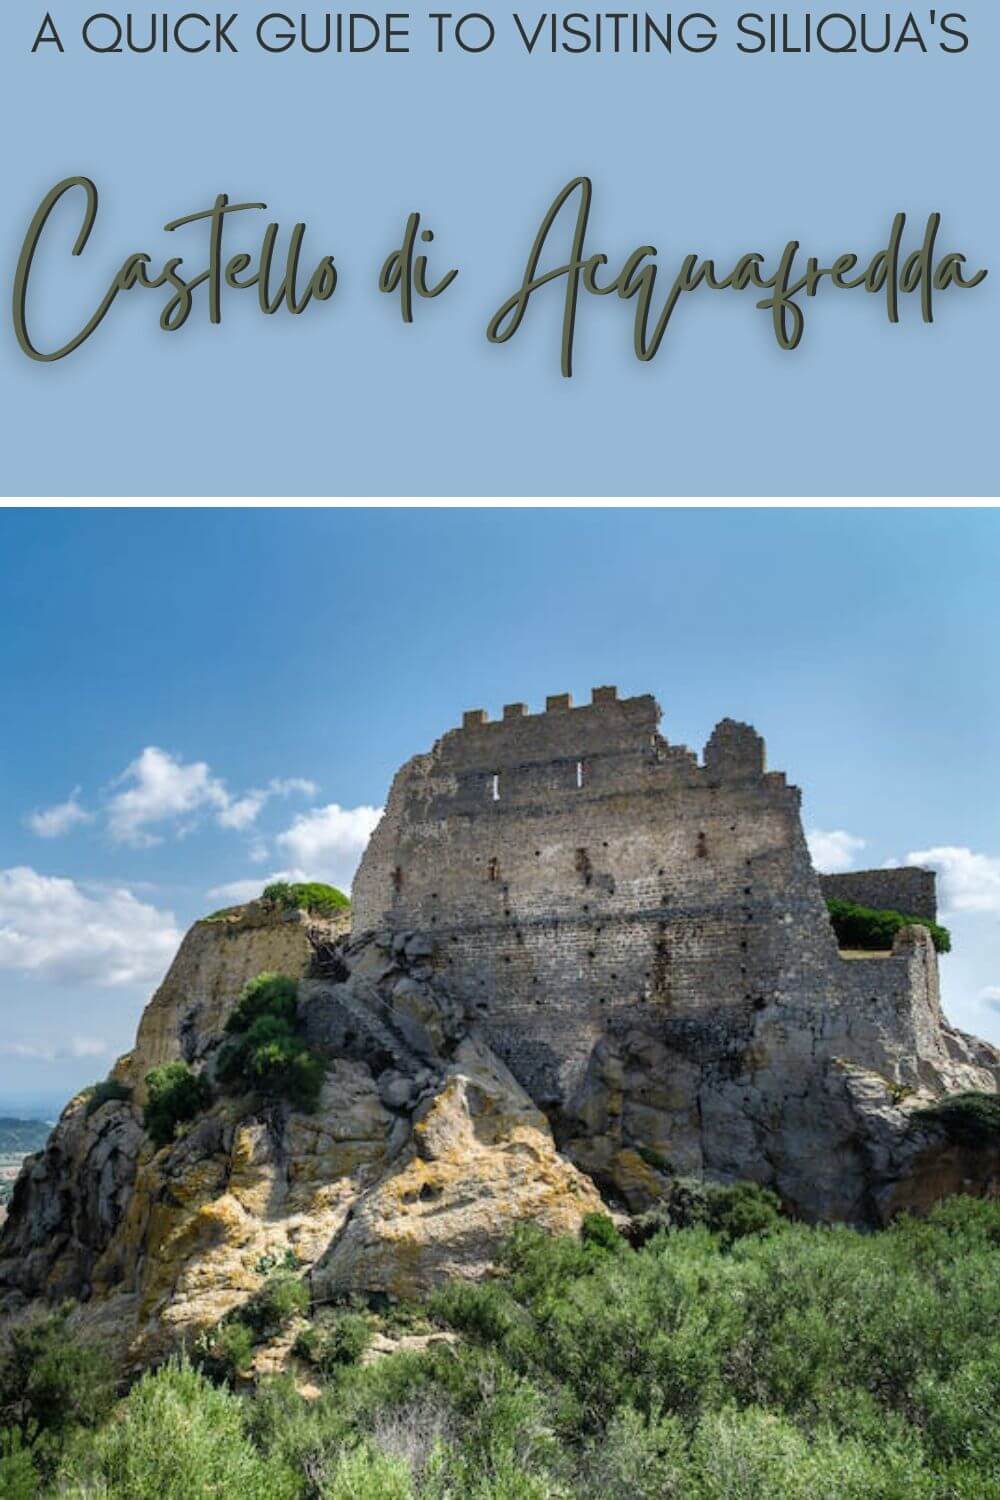 Discover how to visit the Castello di Acquafredda, Siliqua - via @c_tavani